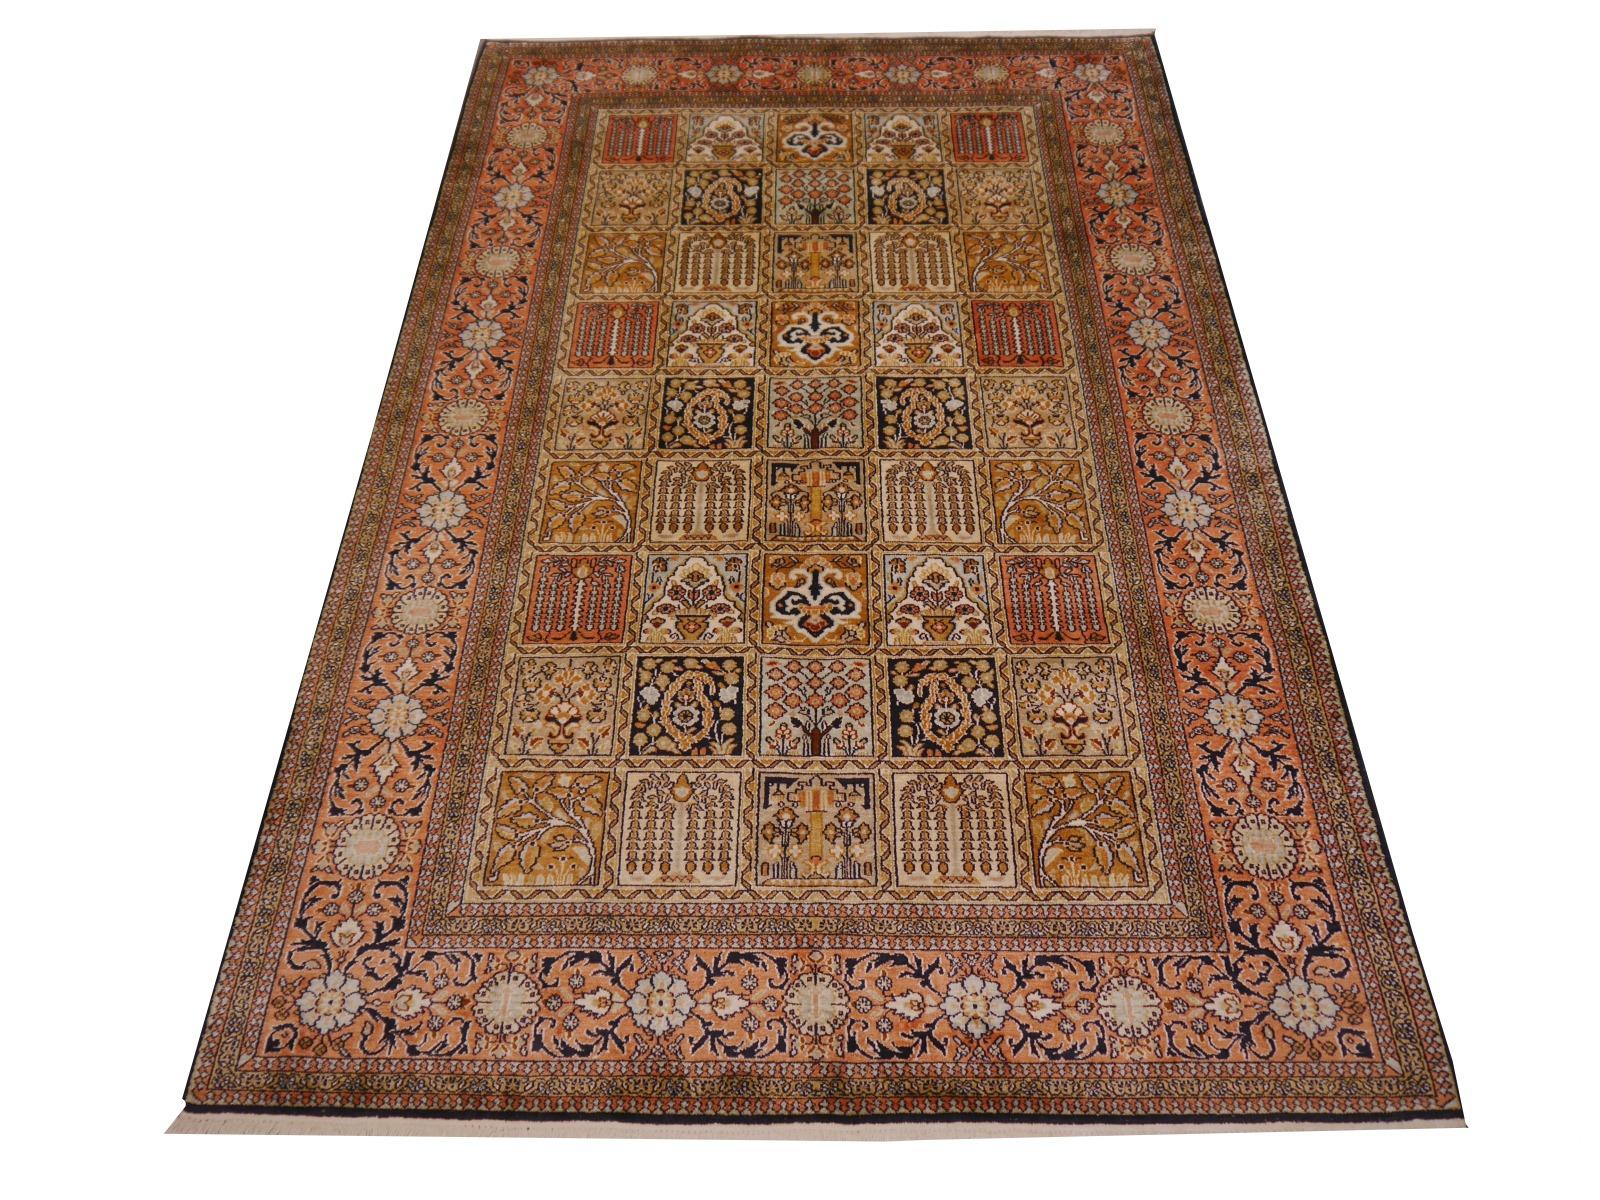 Feiner Kaschmir-Teppich aus reiner Seide. 

Die Herstellung von Teppichen hat in den nördlichen Teilen Indiens eine lange Tradition. Kaschmir ist ein wichtiges Zentrum der Teppichproduktion - sowohl für Seide als auch für Wolle. Kaschmirteppiche